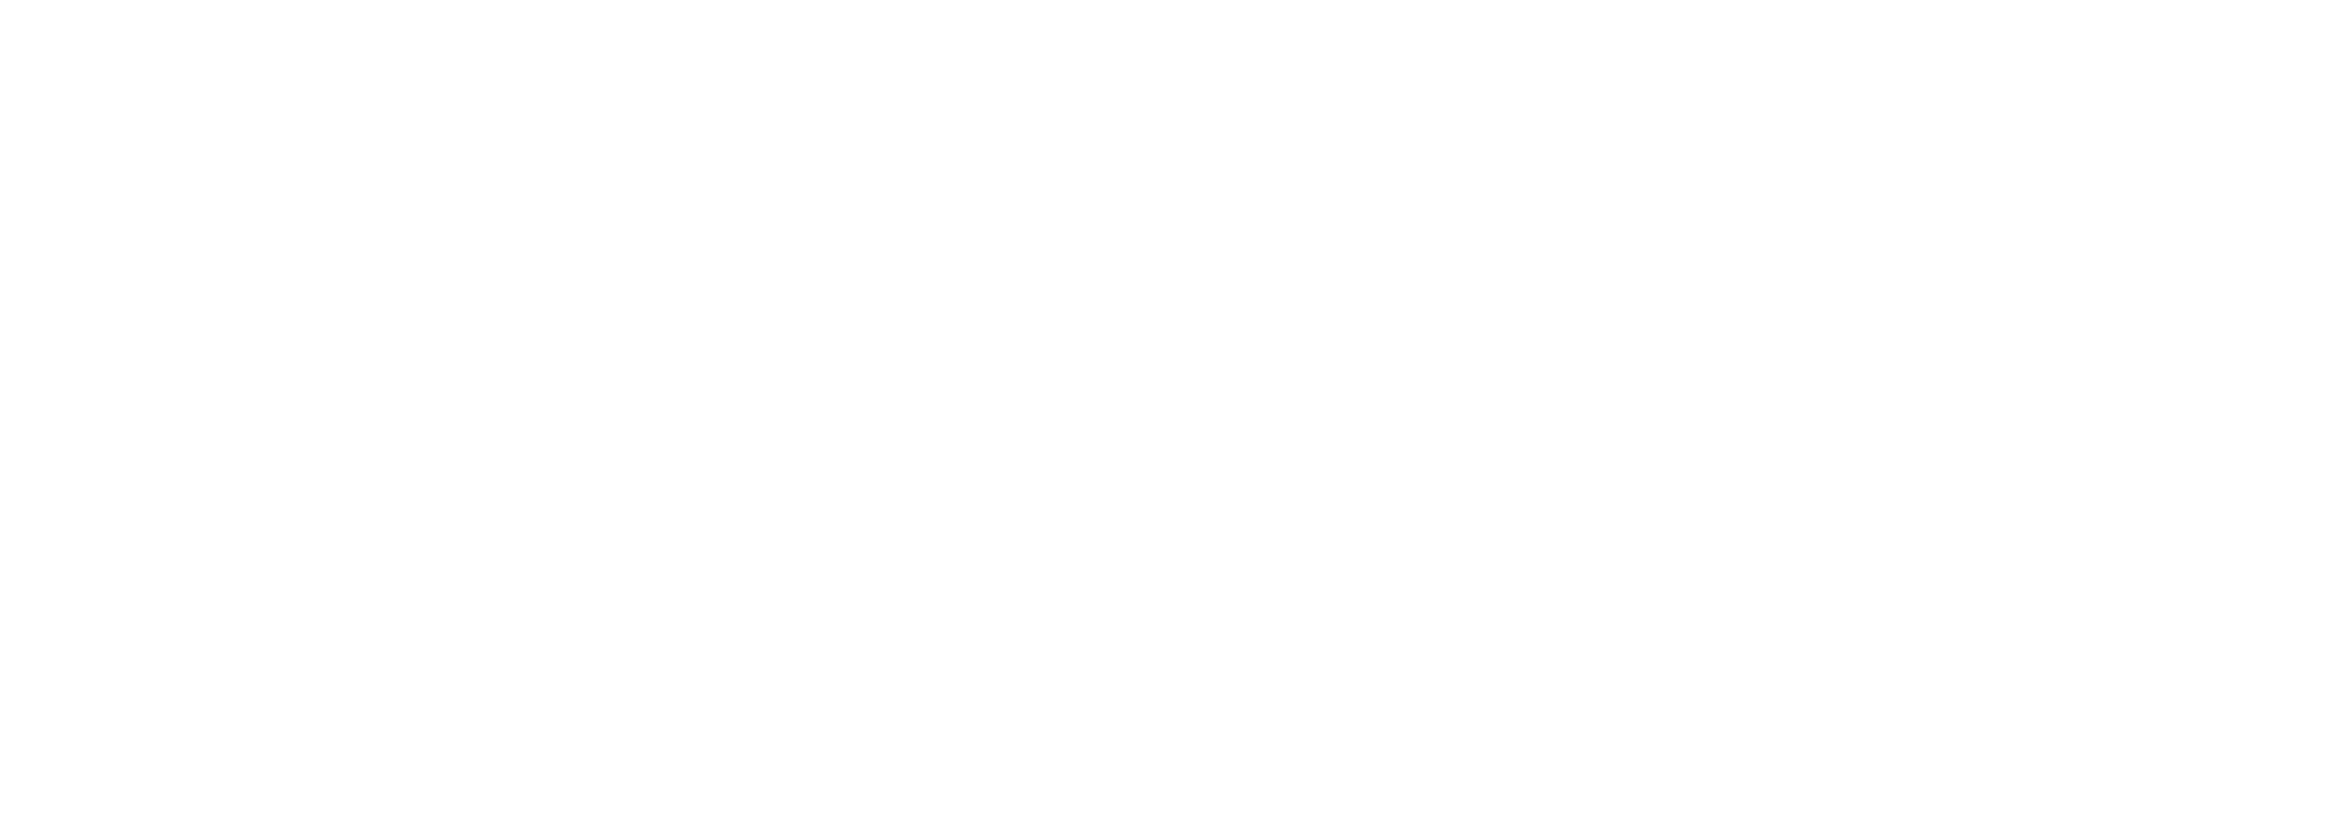 The-Spokesman-Review-min